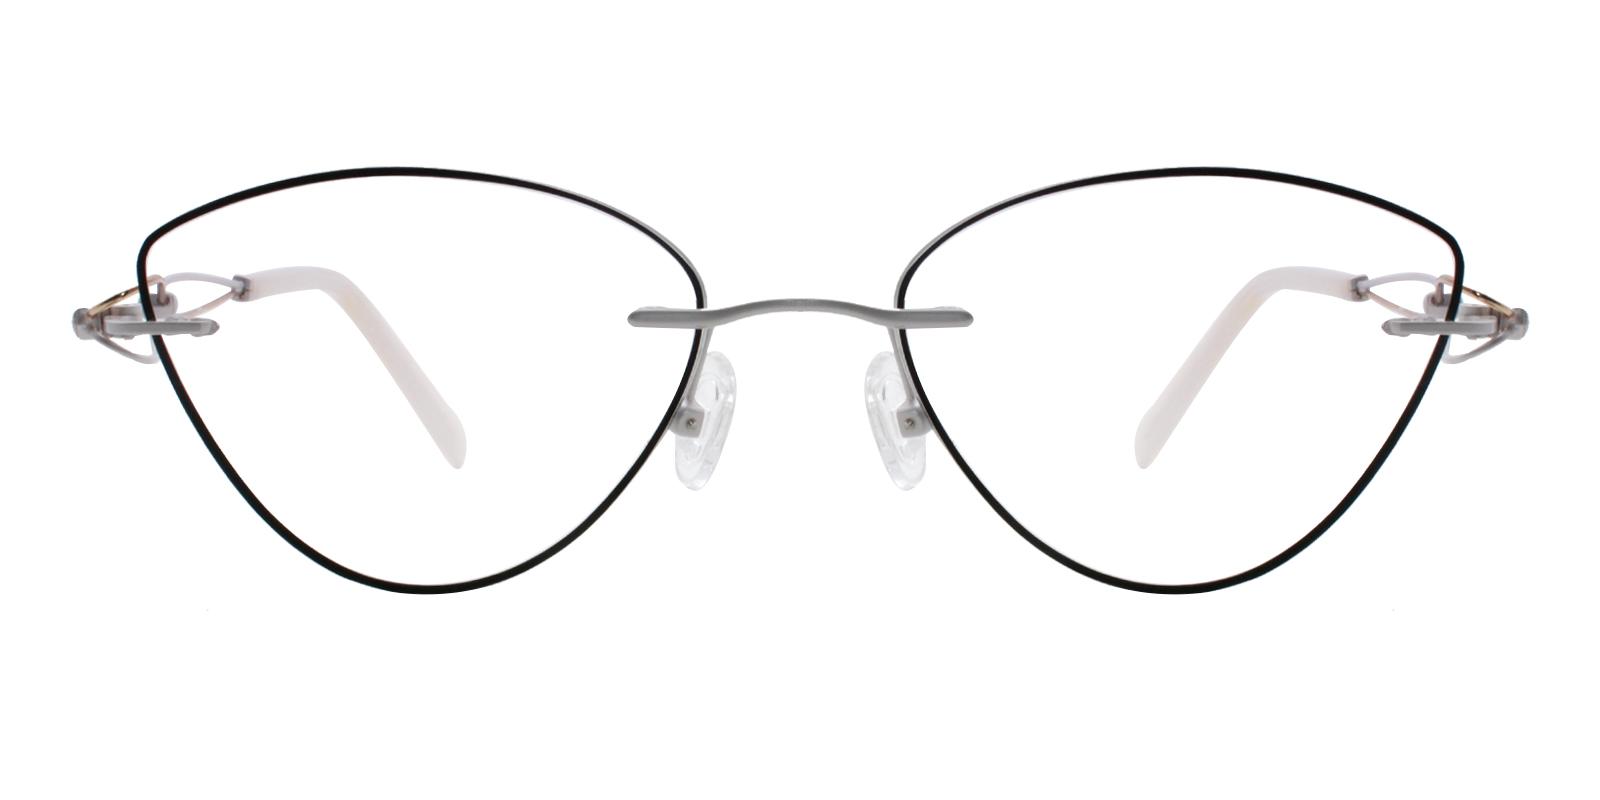 Kaylee Black Titanium Eyeglasses , NosePads Frames from ABBE Glasses